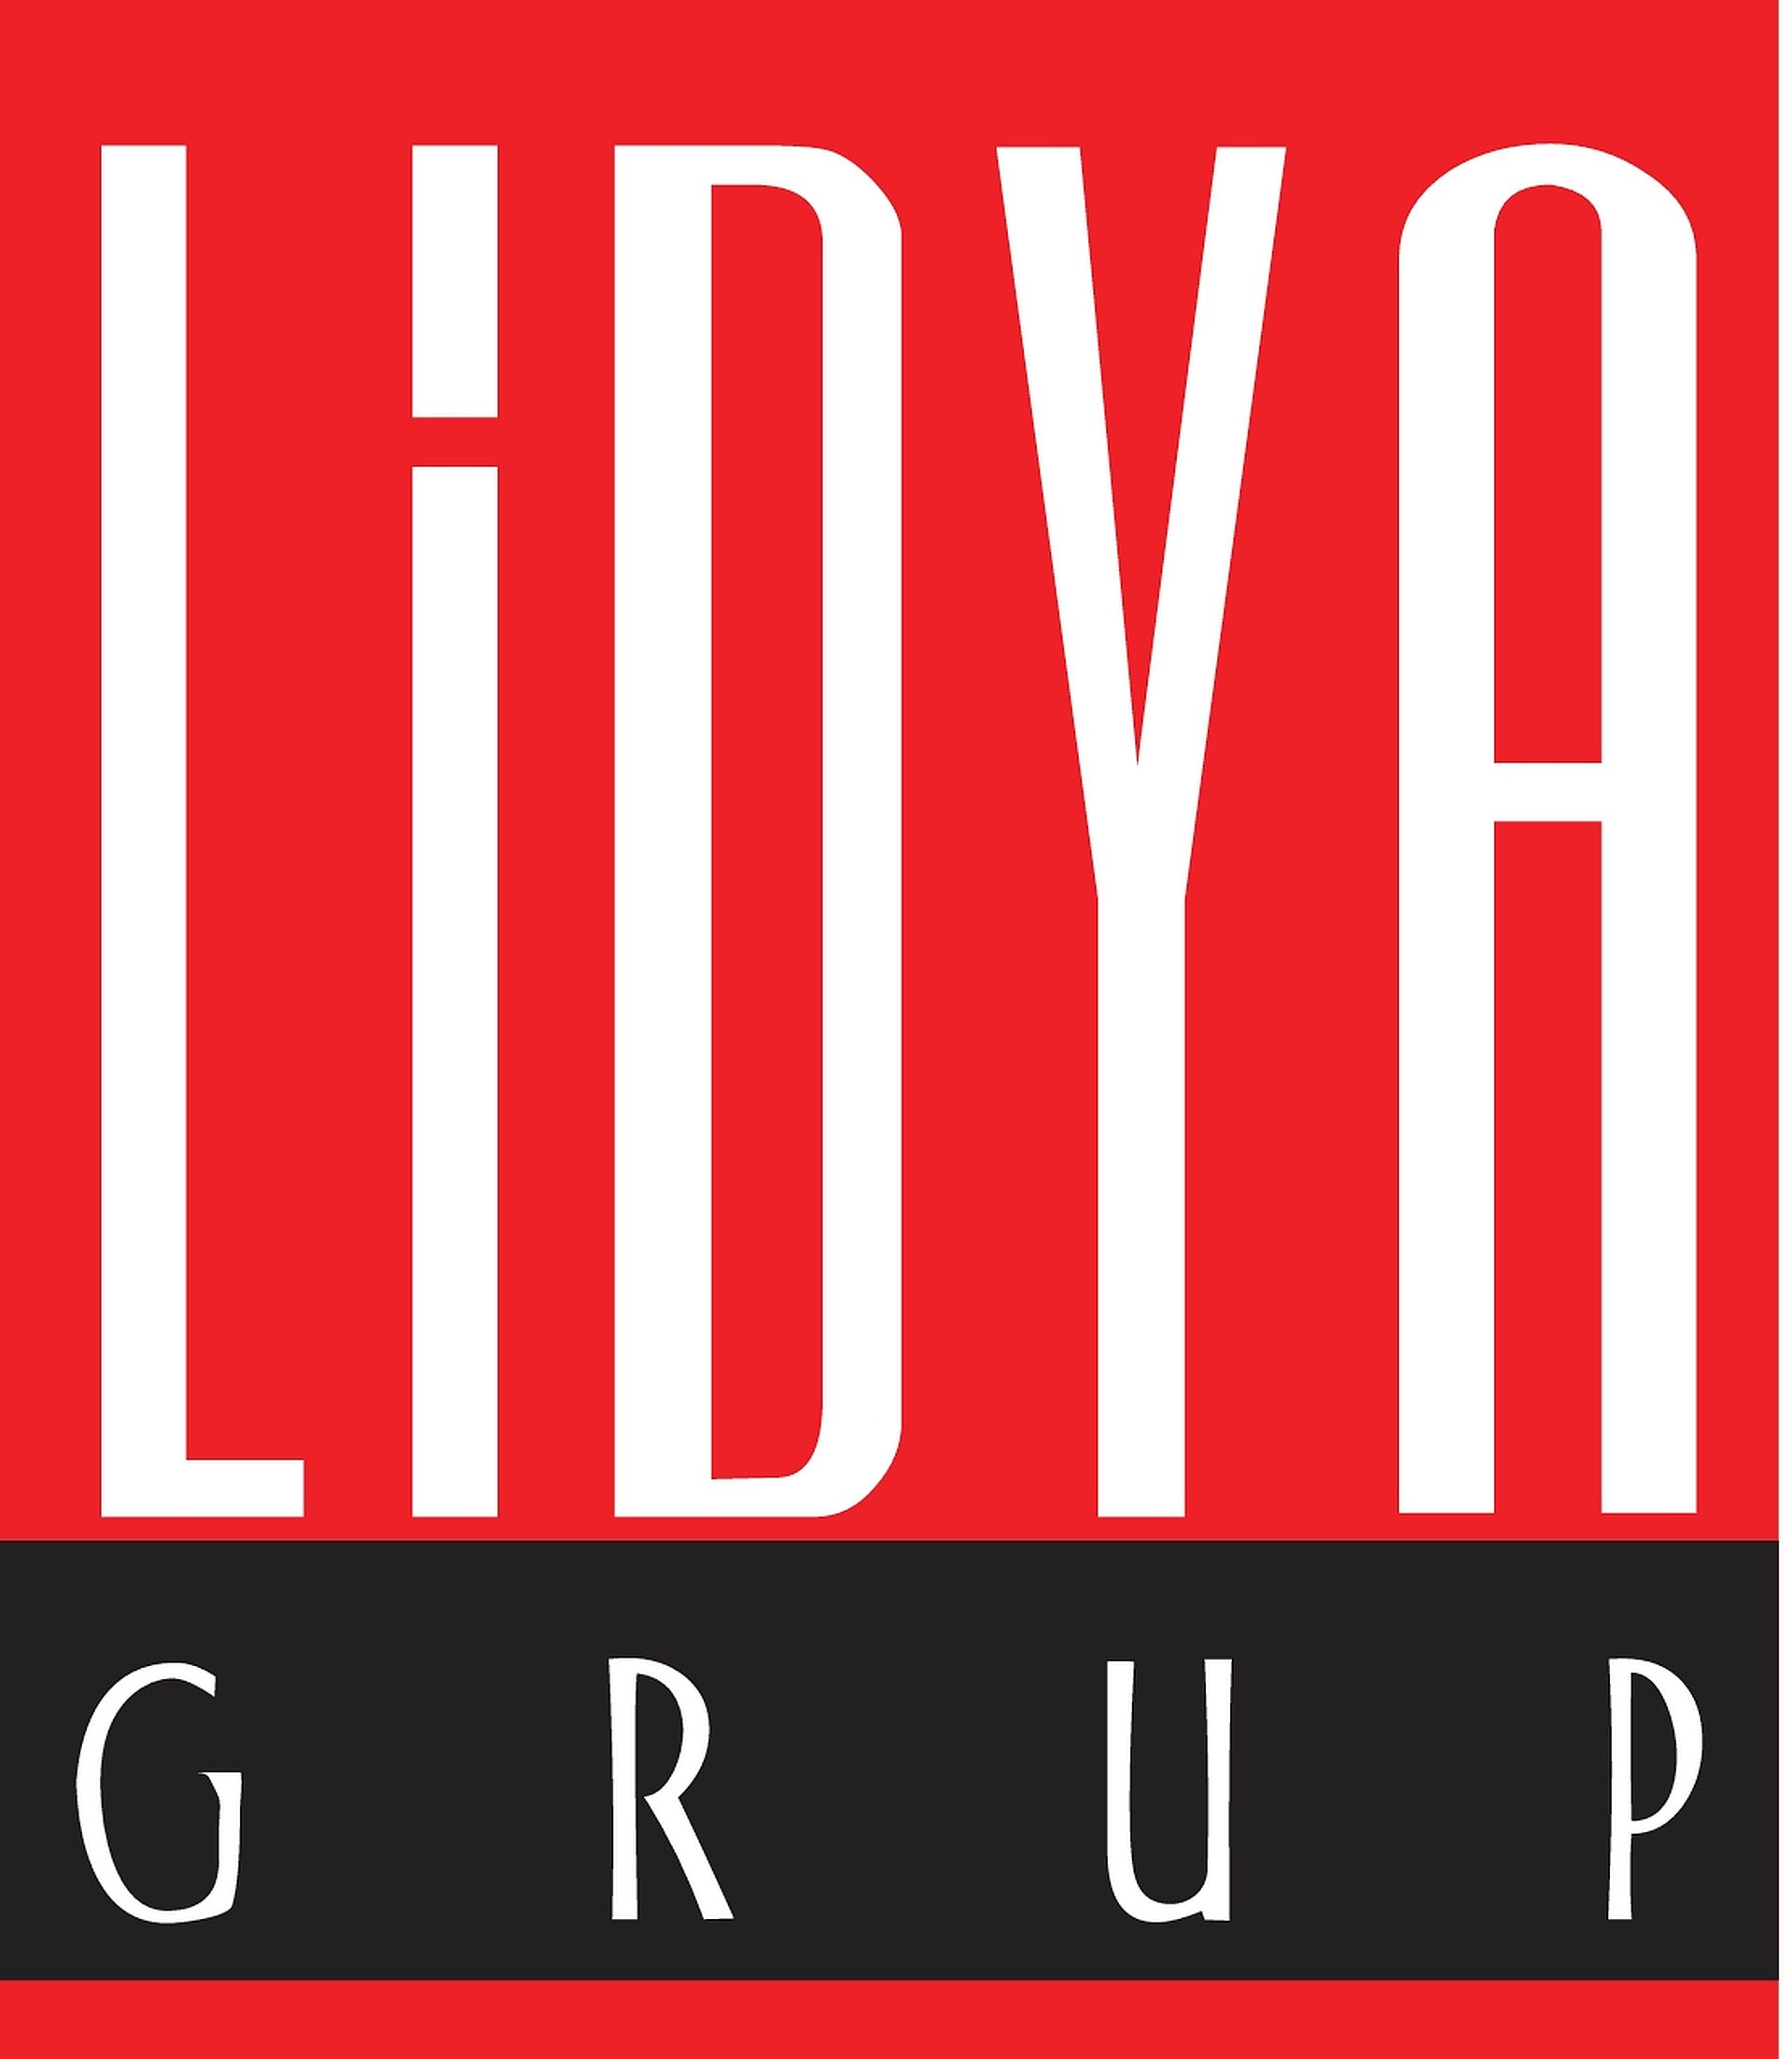 Xerox Türkiye operasyonunu Lidya Grup satın aldı